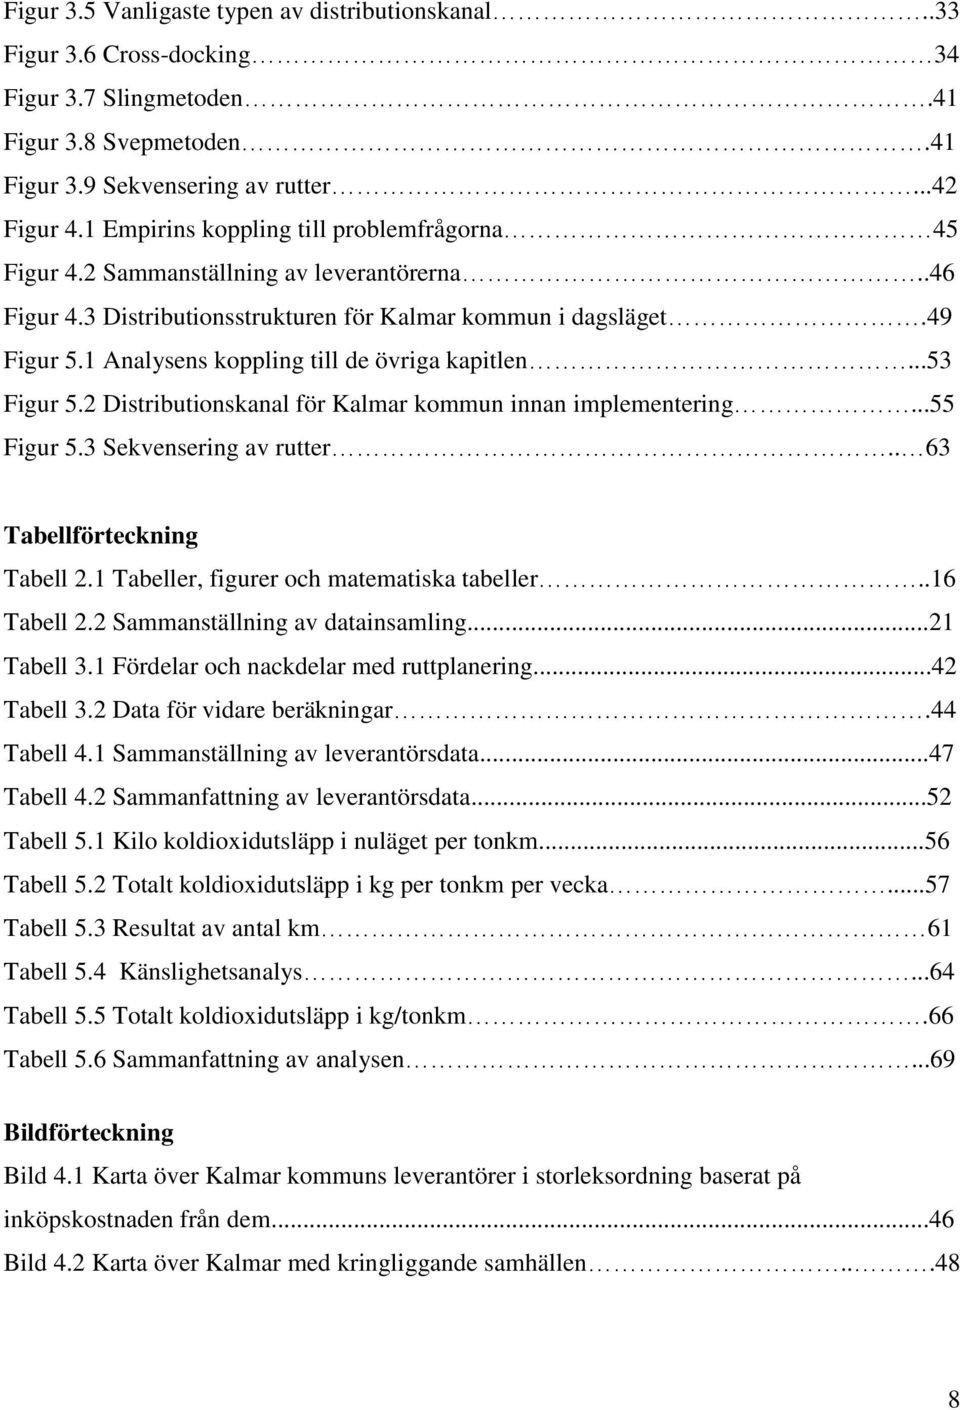 1 Analysens koppling till de övriga kapitlen...53 Figur 5.2 Distributionskanal för Kalmar kommun innan implementering...55 Figur 5.3 Sekvensering av rutter.. 63 Tabellförteckning Tabell 2.